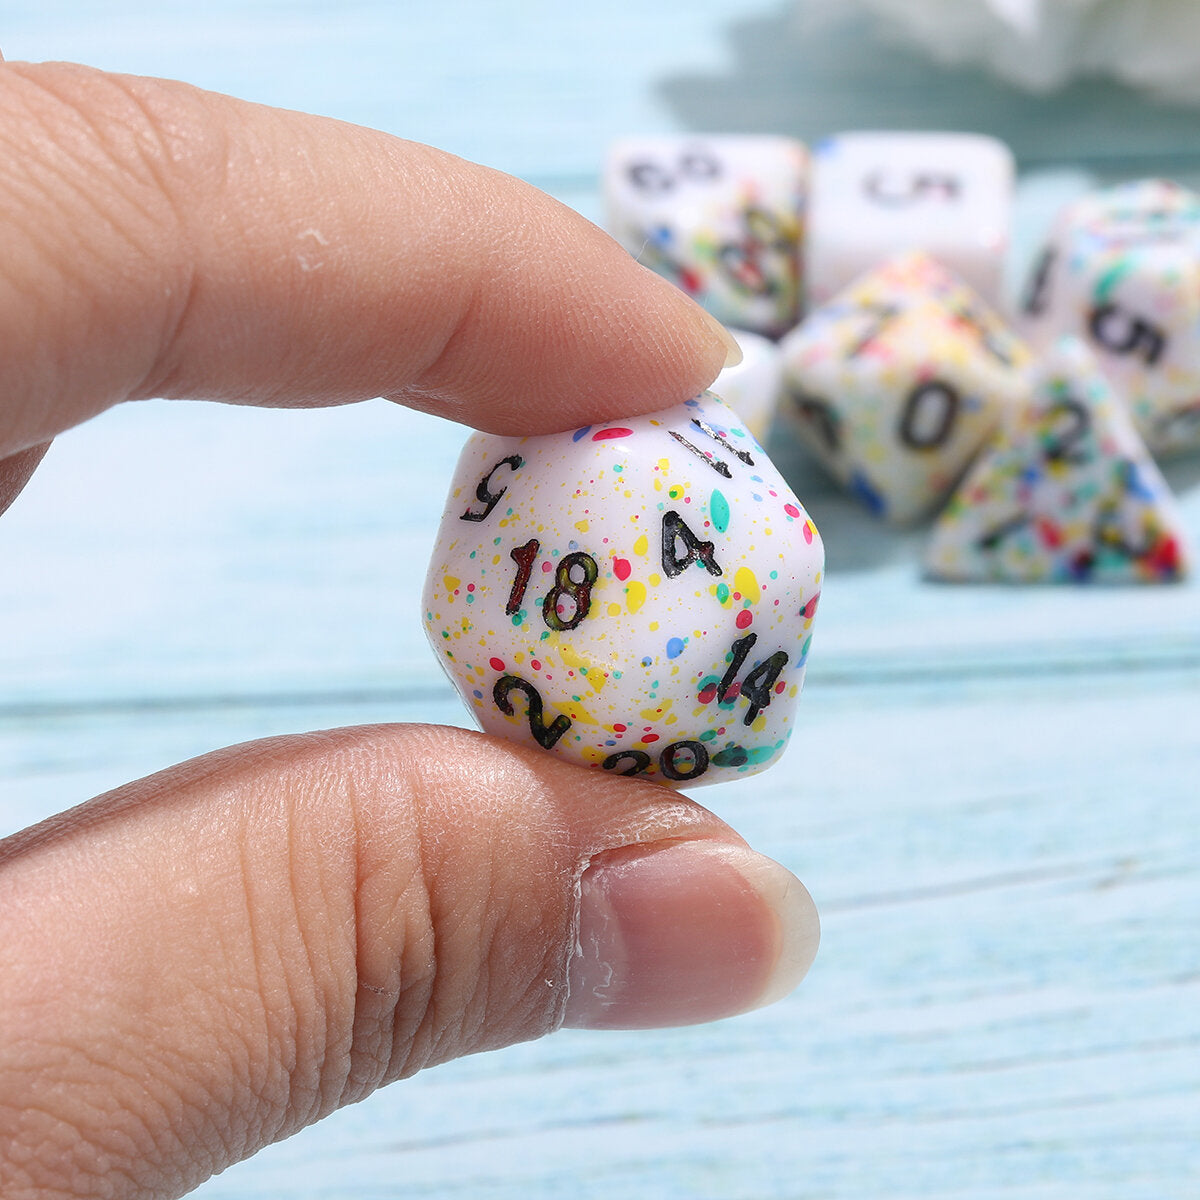 7-delige acryl polyhedral dobbelstenen set colorful bordspel meerzijdige dobbelstenen gadget